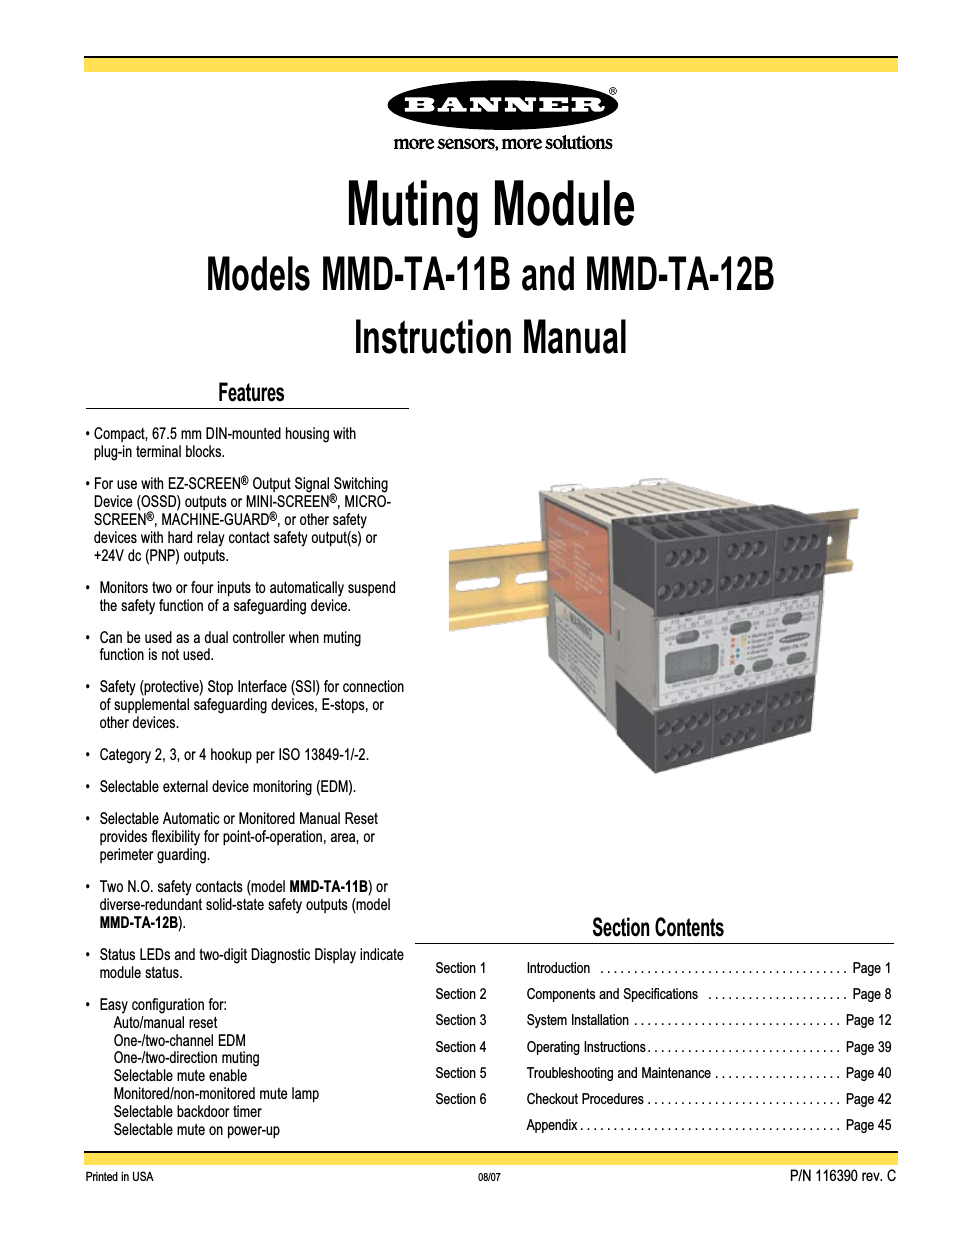 MMD-TA-11B Muting Modules